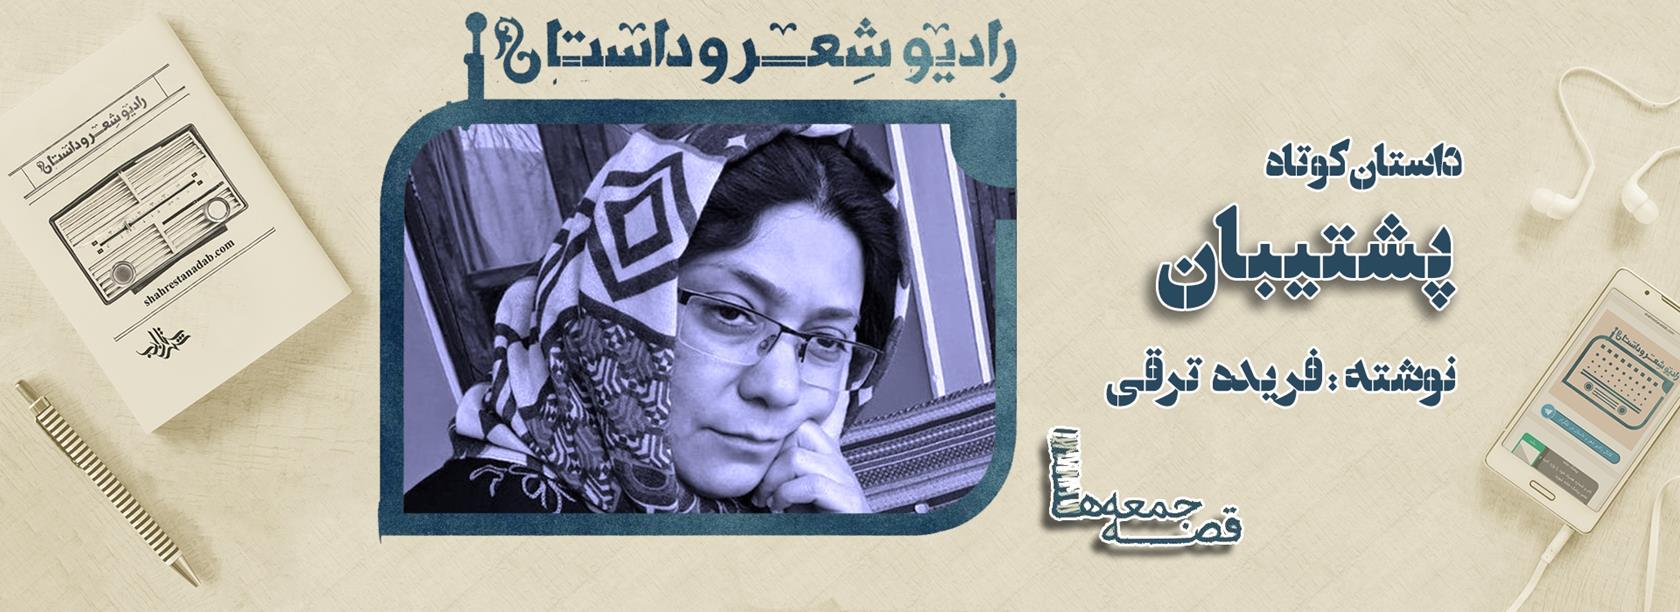 قصه جمعه ها : داستان کوتاه پشتیبان نوشته فریده ترقی 